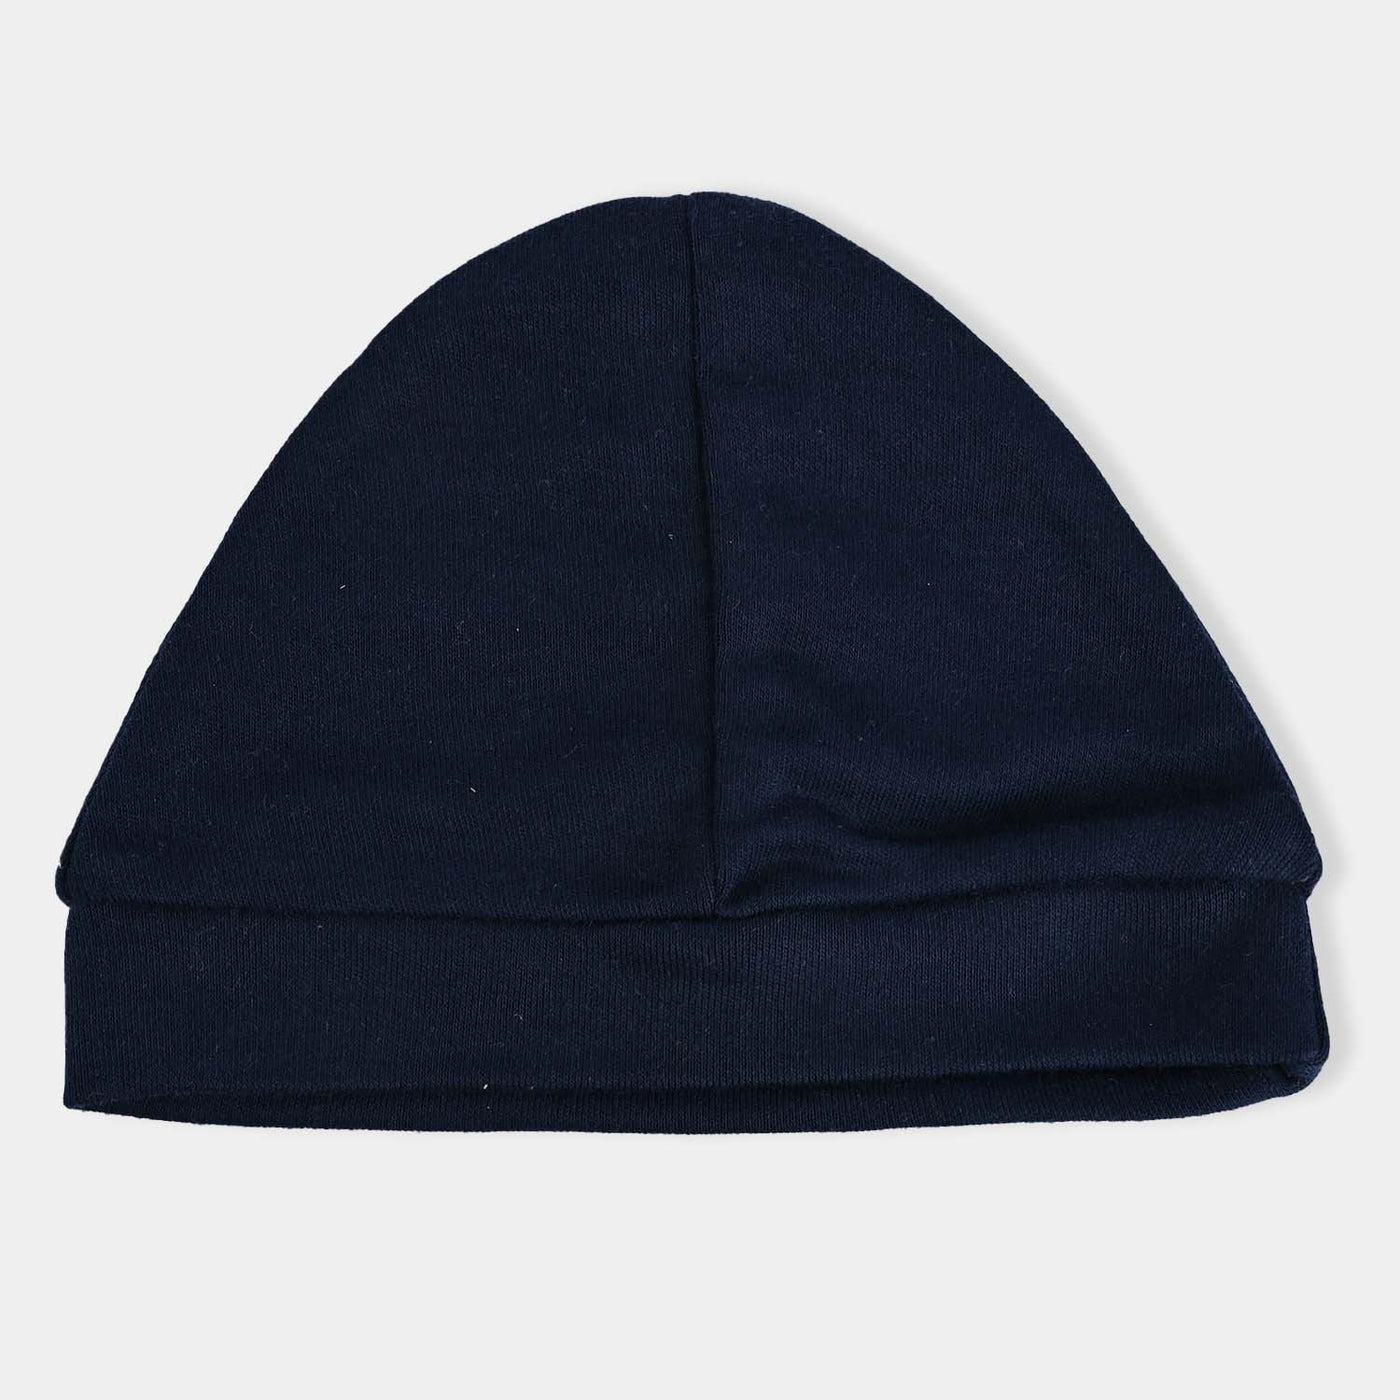 Baby Cap/Hat Pack of 3 | 0M+